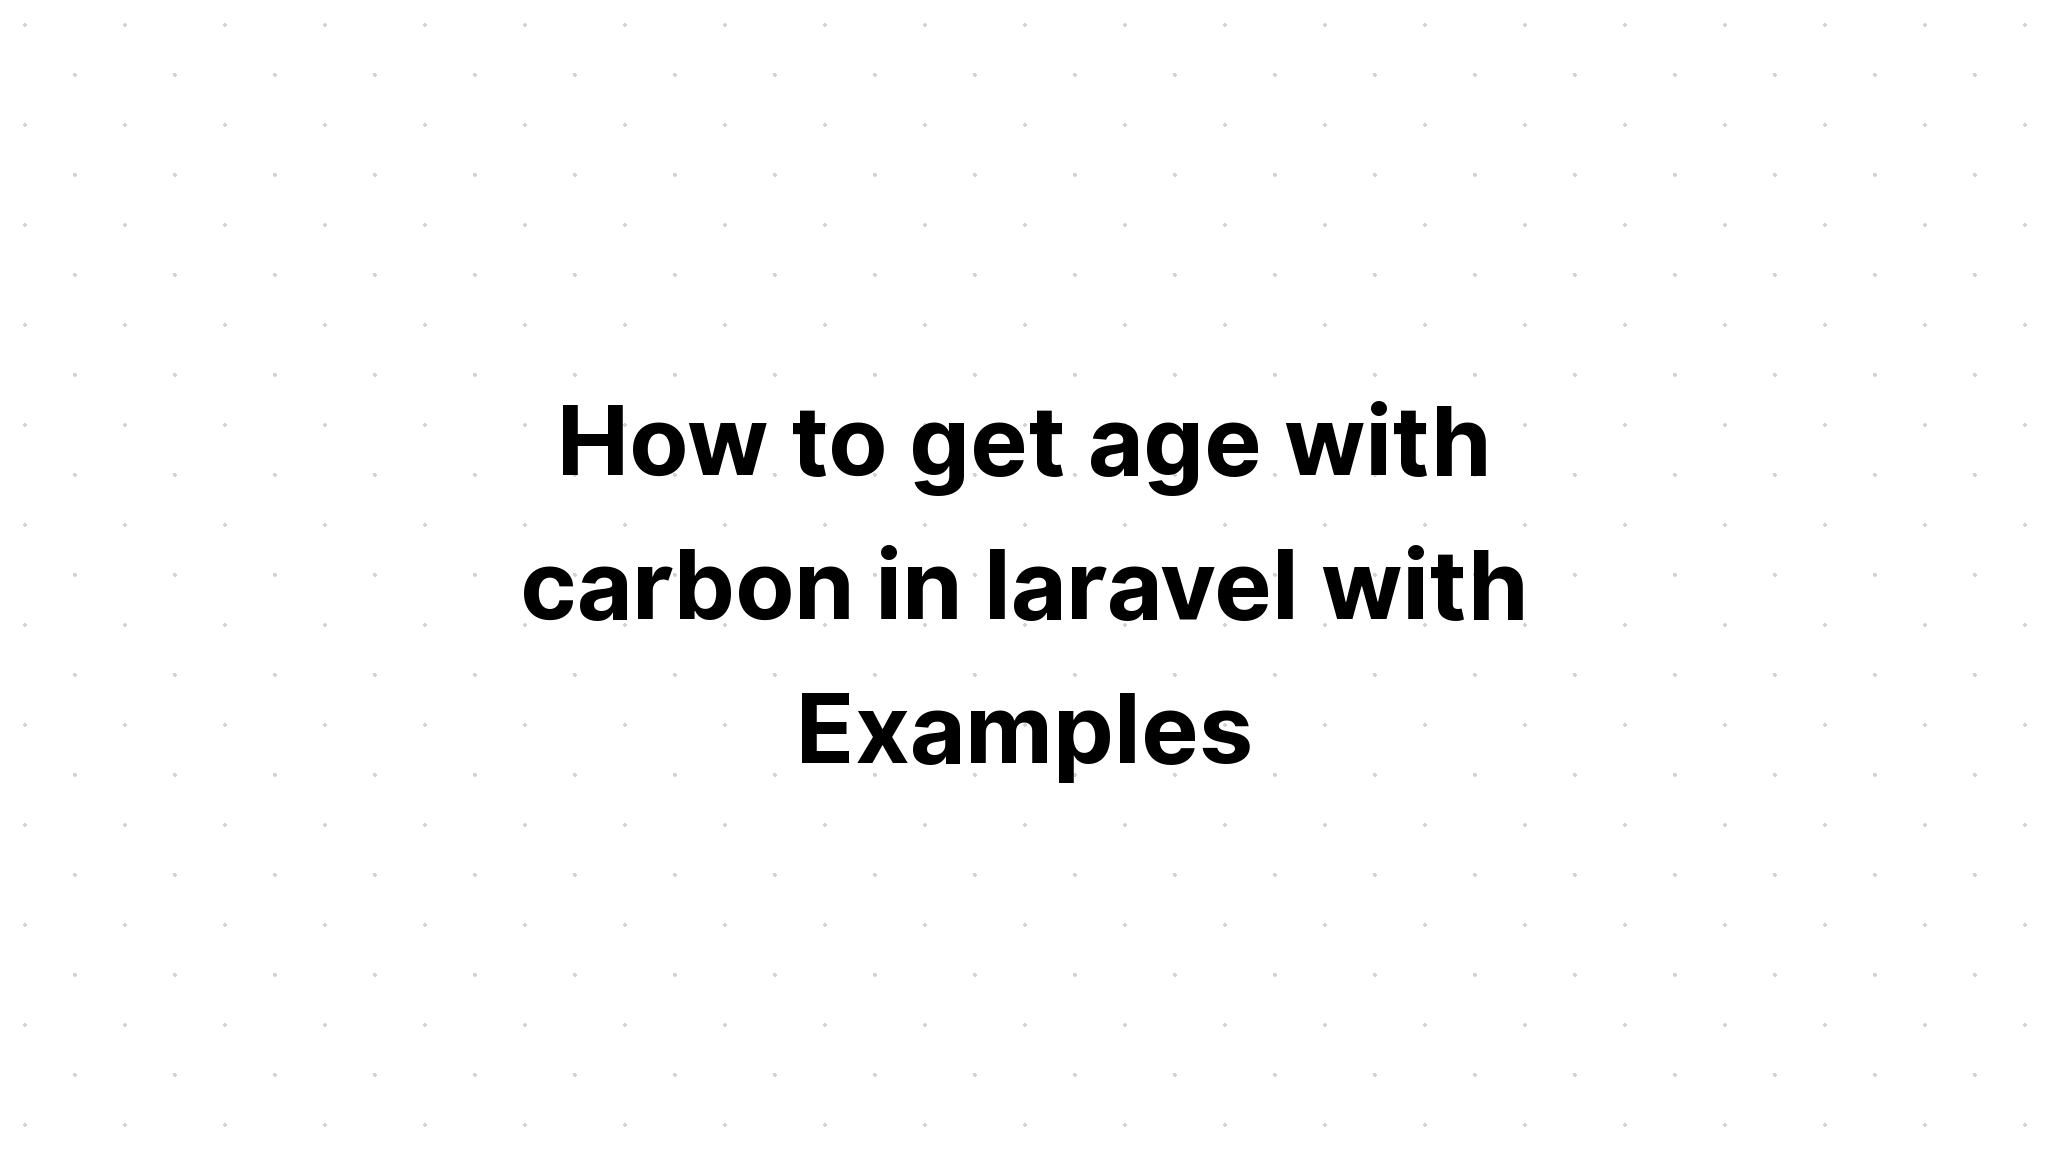 Cách lấy tuổi bằng carbon trong laravel với các ví dụ